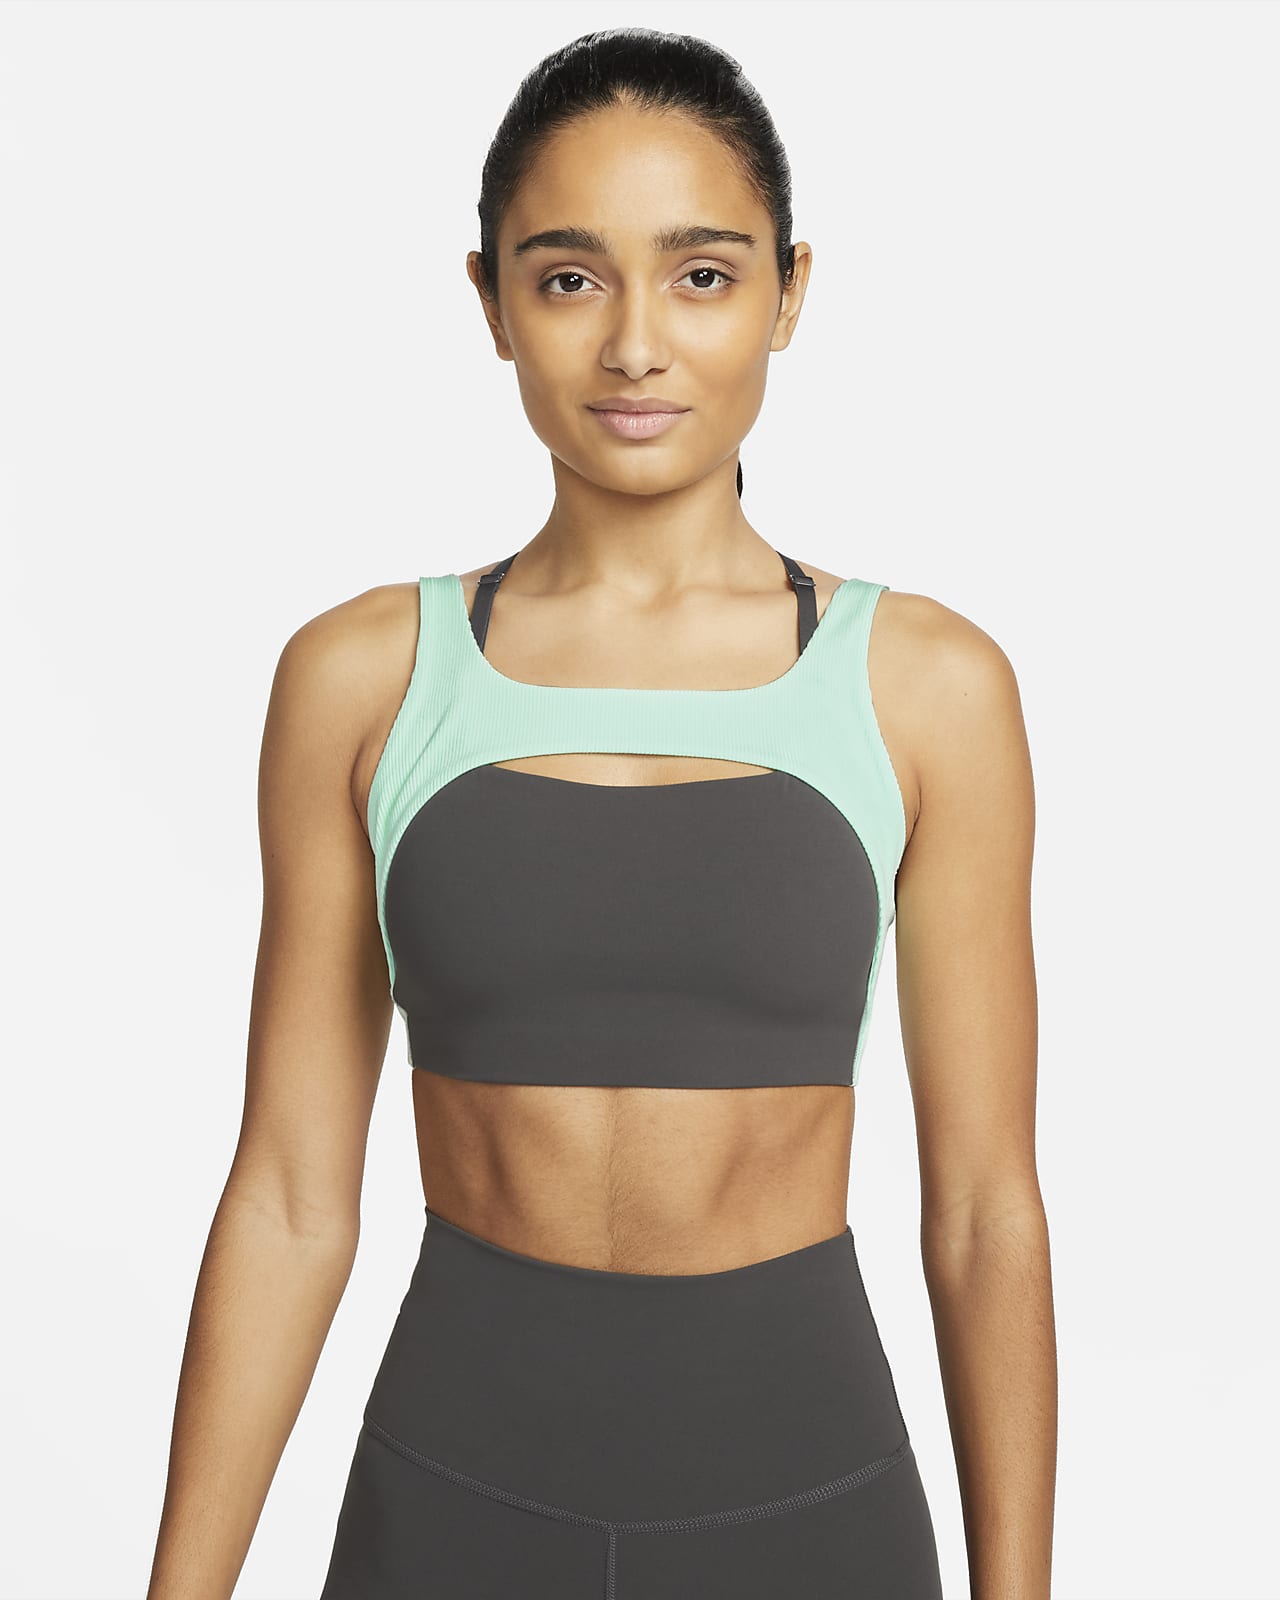 Dámská žebrovaná sportovní podprsenka Nike Yoga Indy bez vycpávek s lehkou oporou